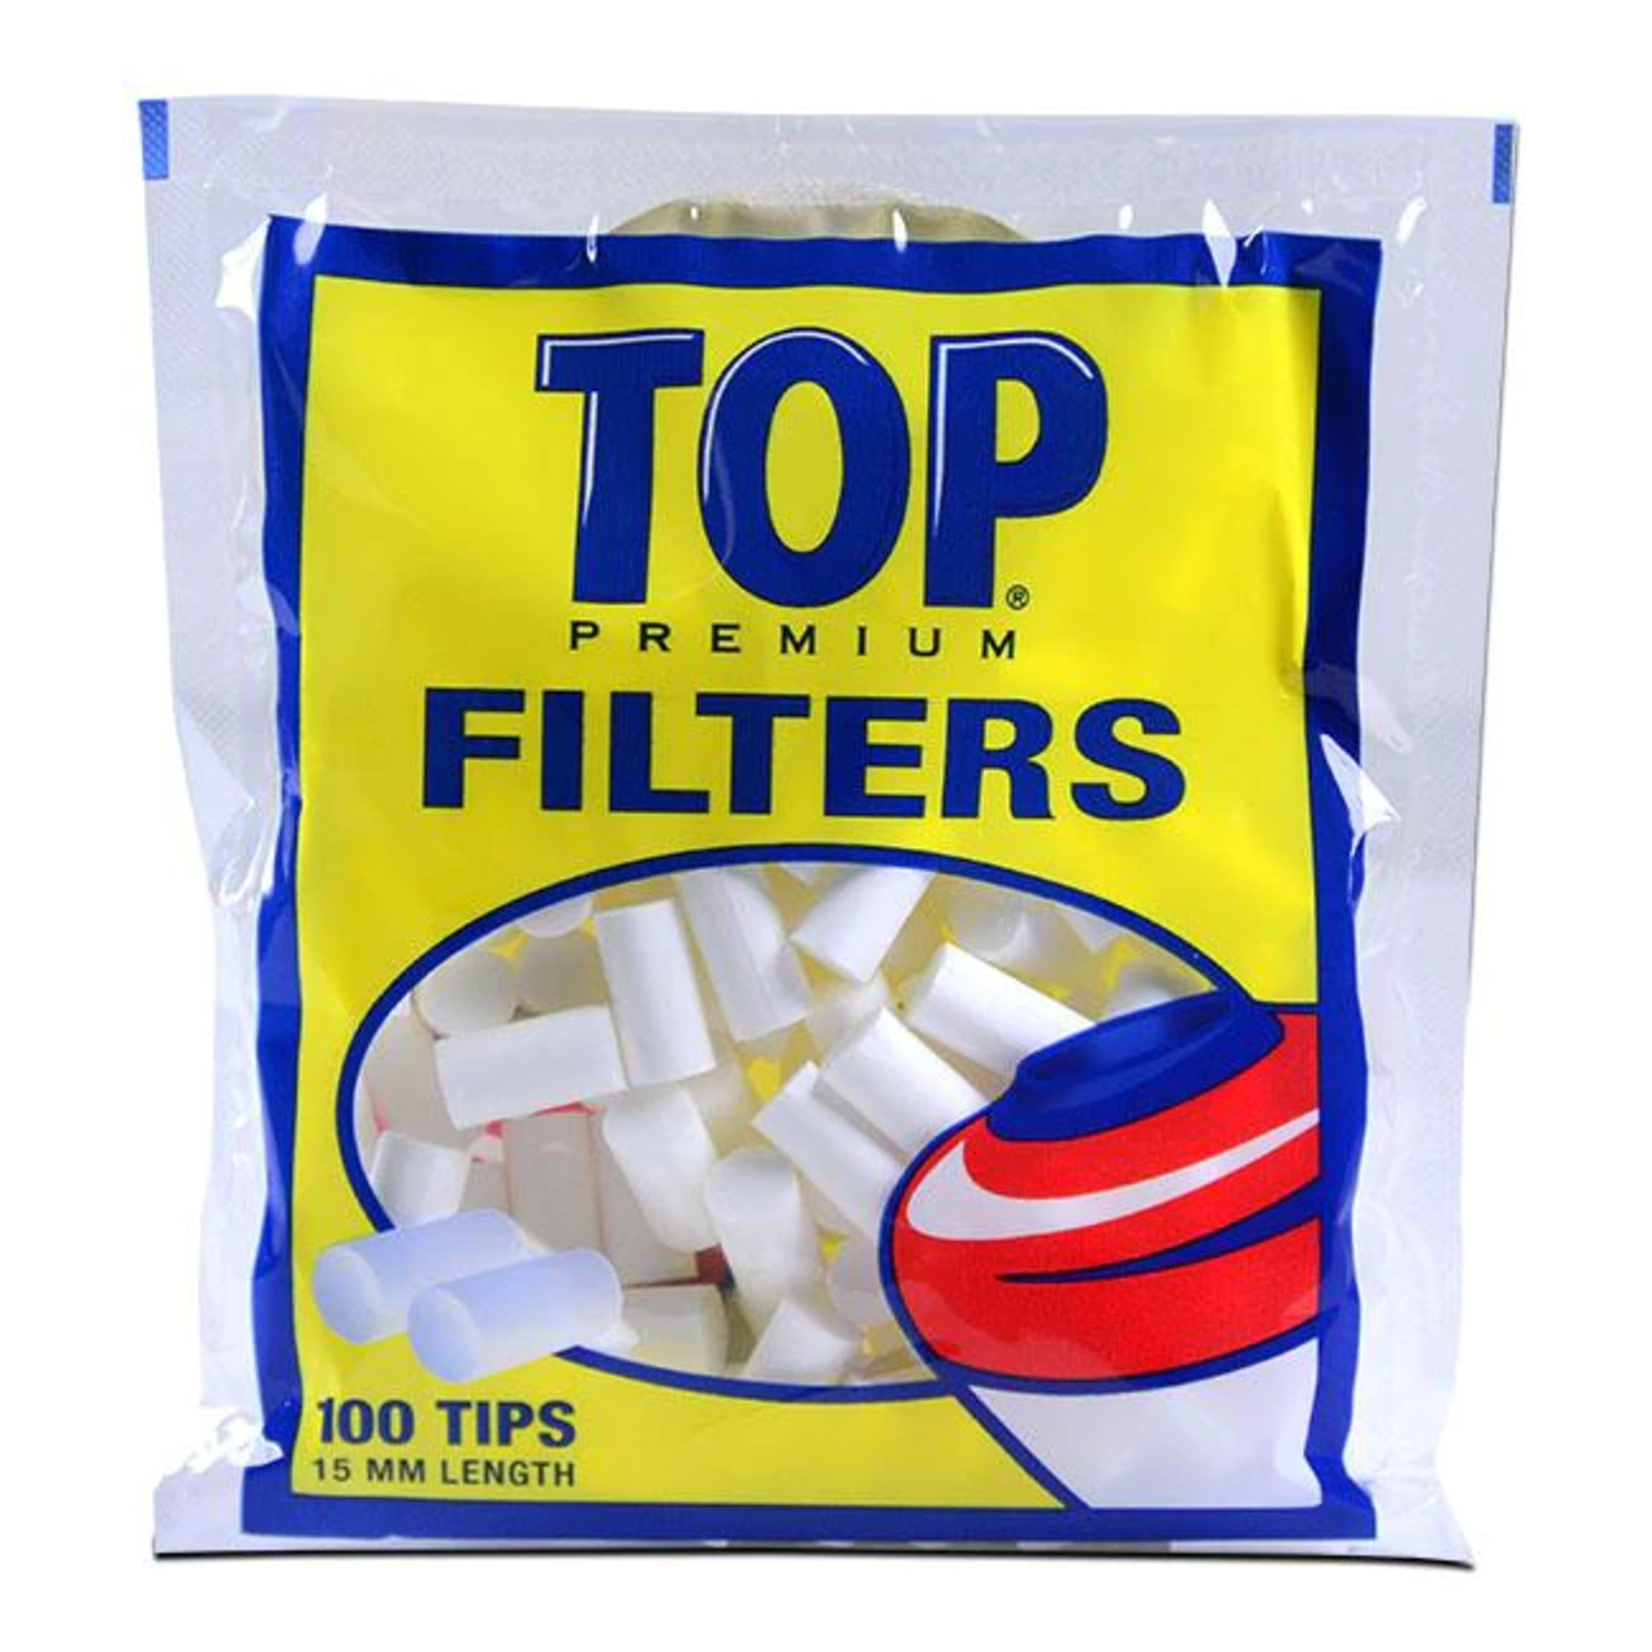 Top Top Premium FIlters